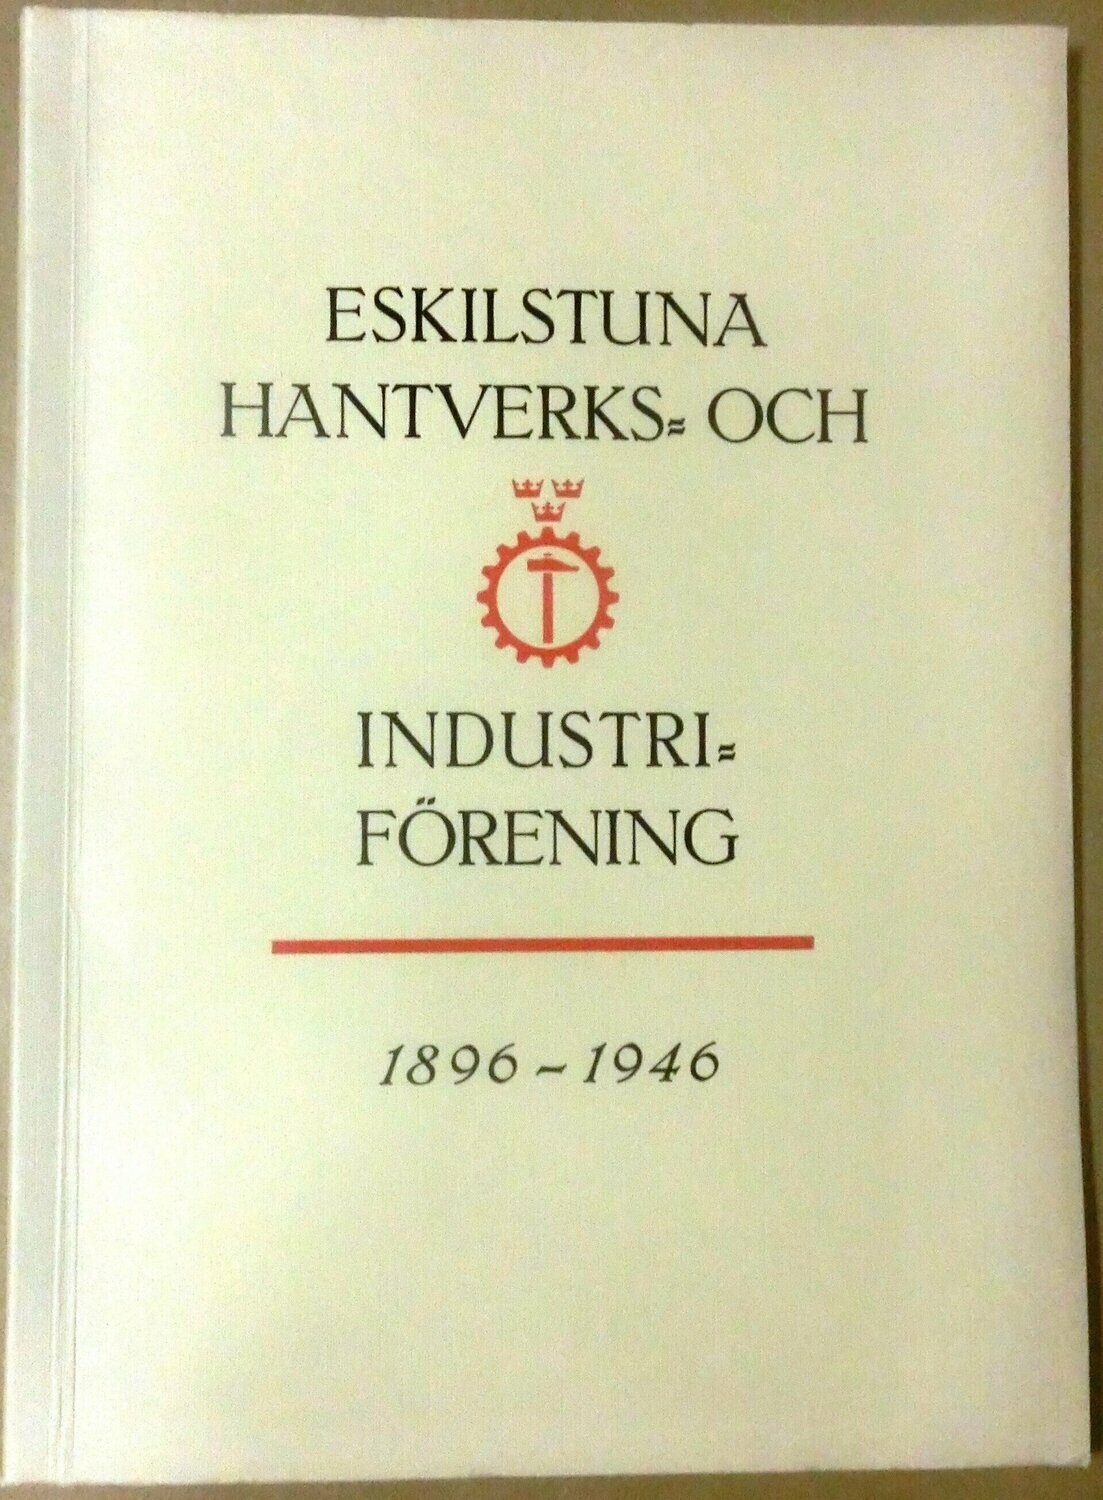 Eskilstuna hantverks och industri förening 1896-1946